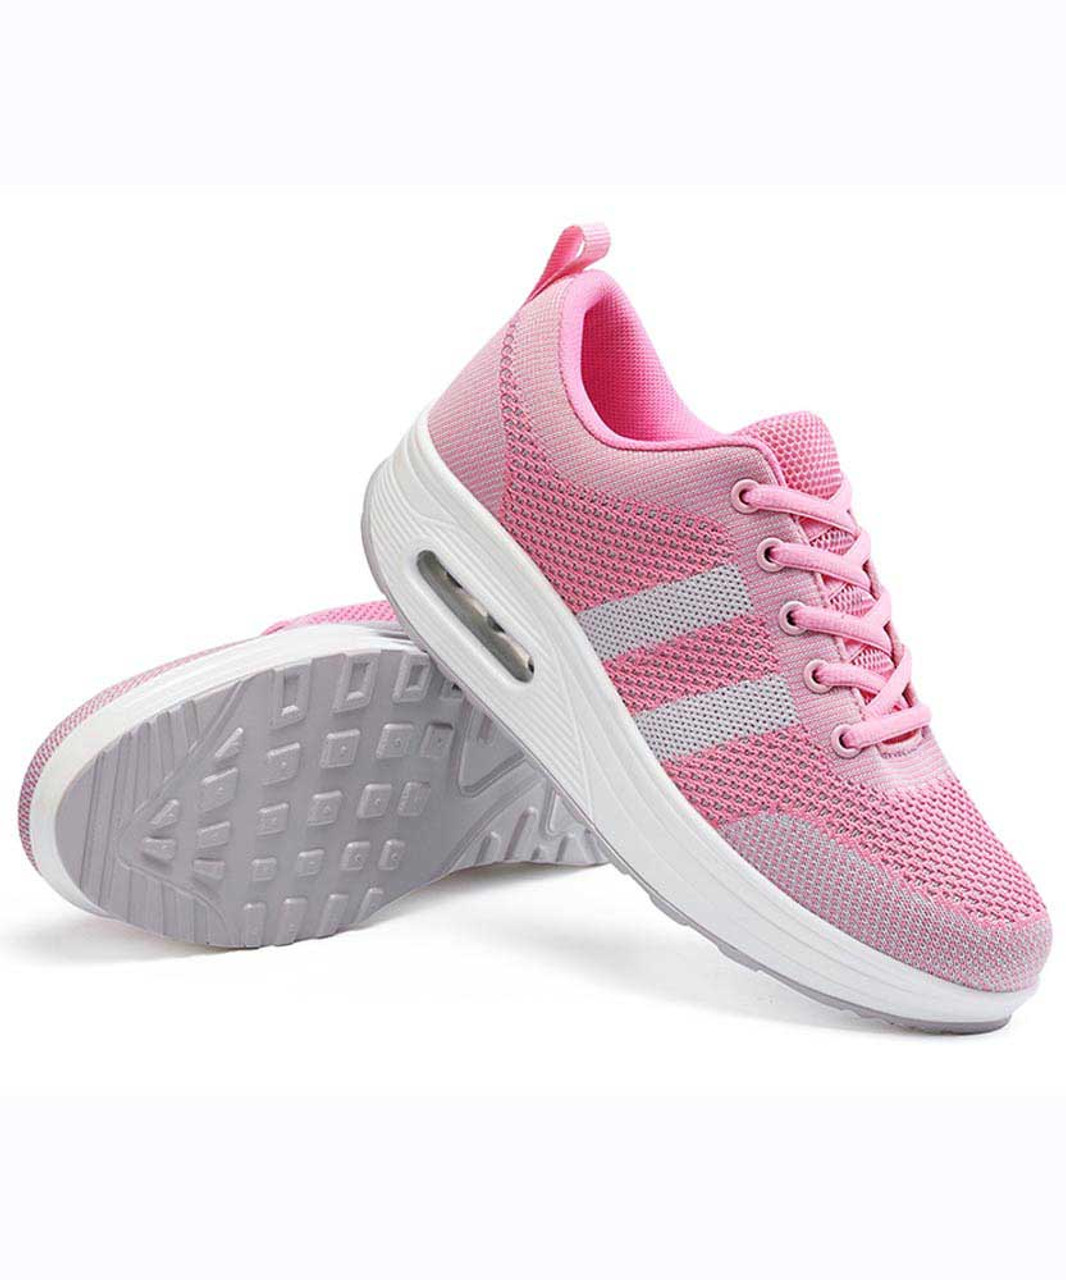 Pink grey stripe flyknit rocker bottom shoe sneaker | Womens rocker ...